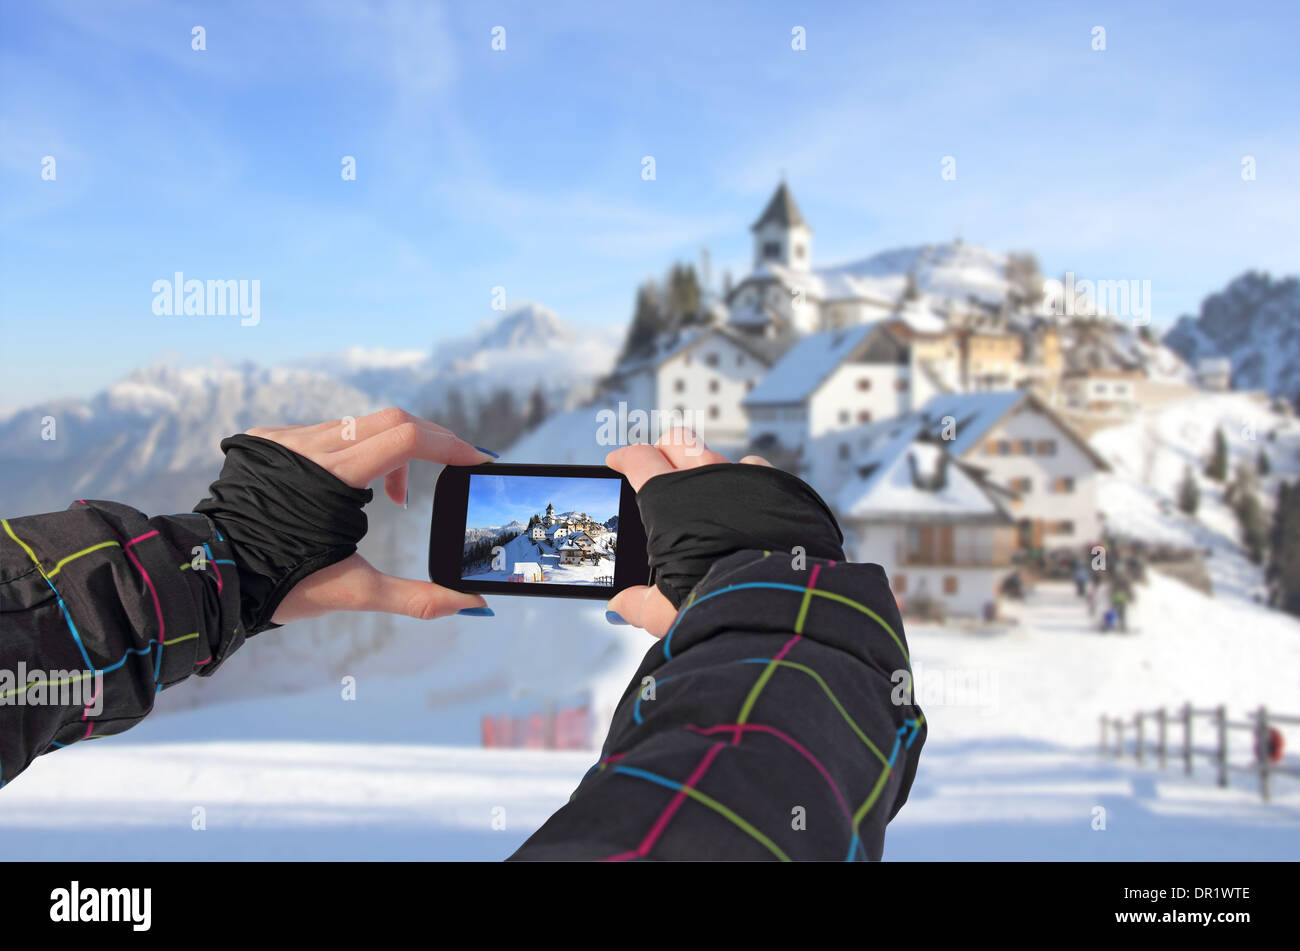 Photographier un téléphone cellulaire, paysage d'hiver, village idyllique Monte Lussari, Italie Banque D'Images